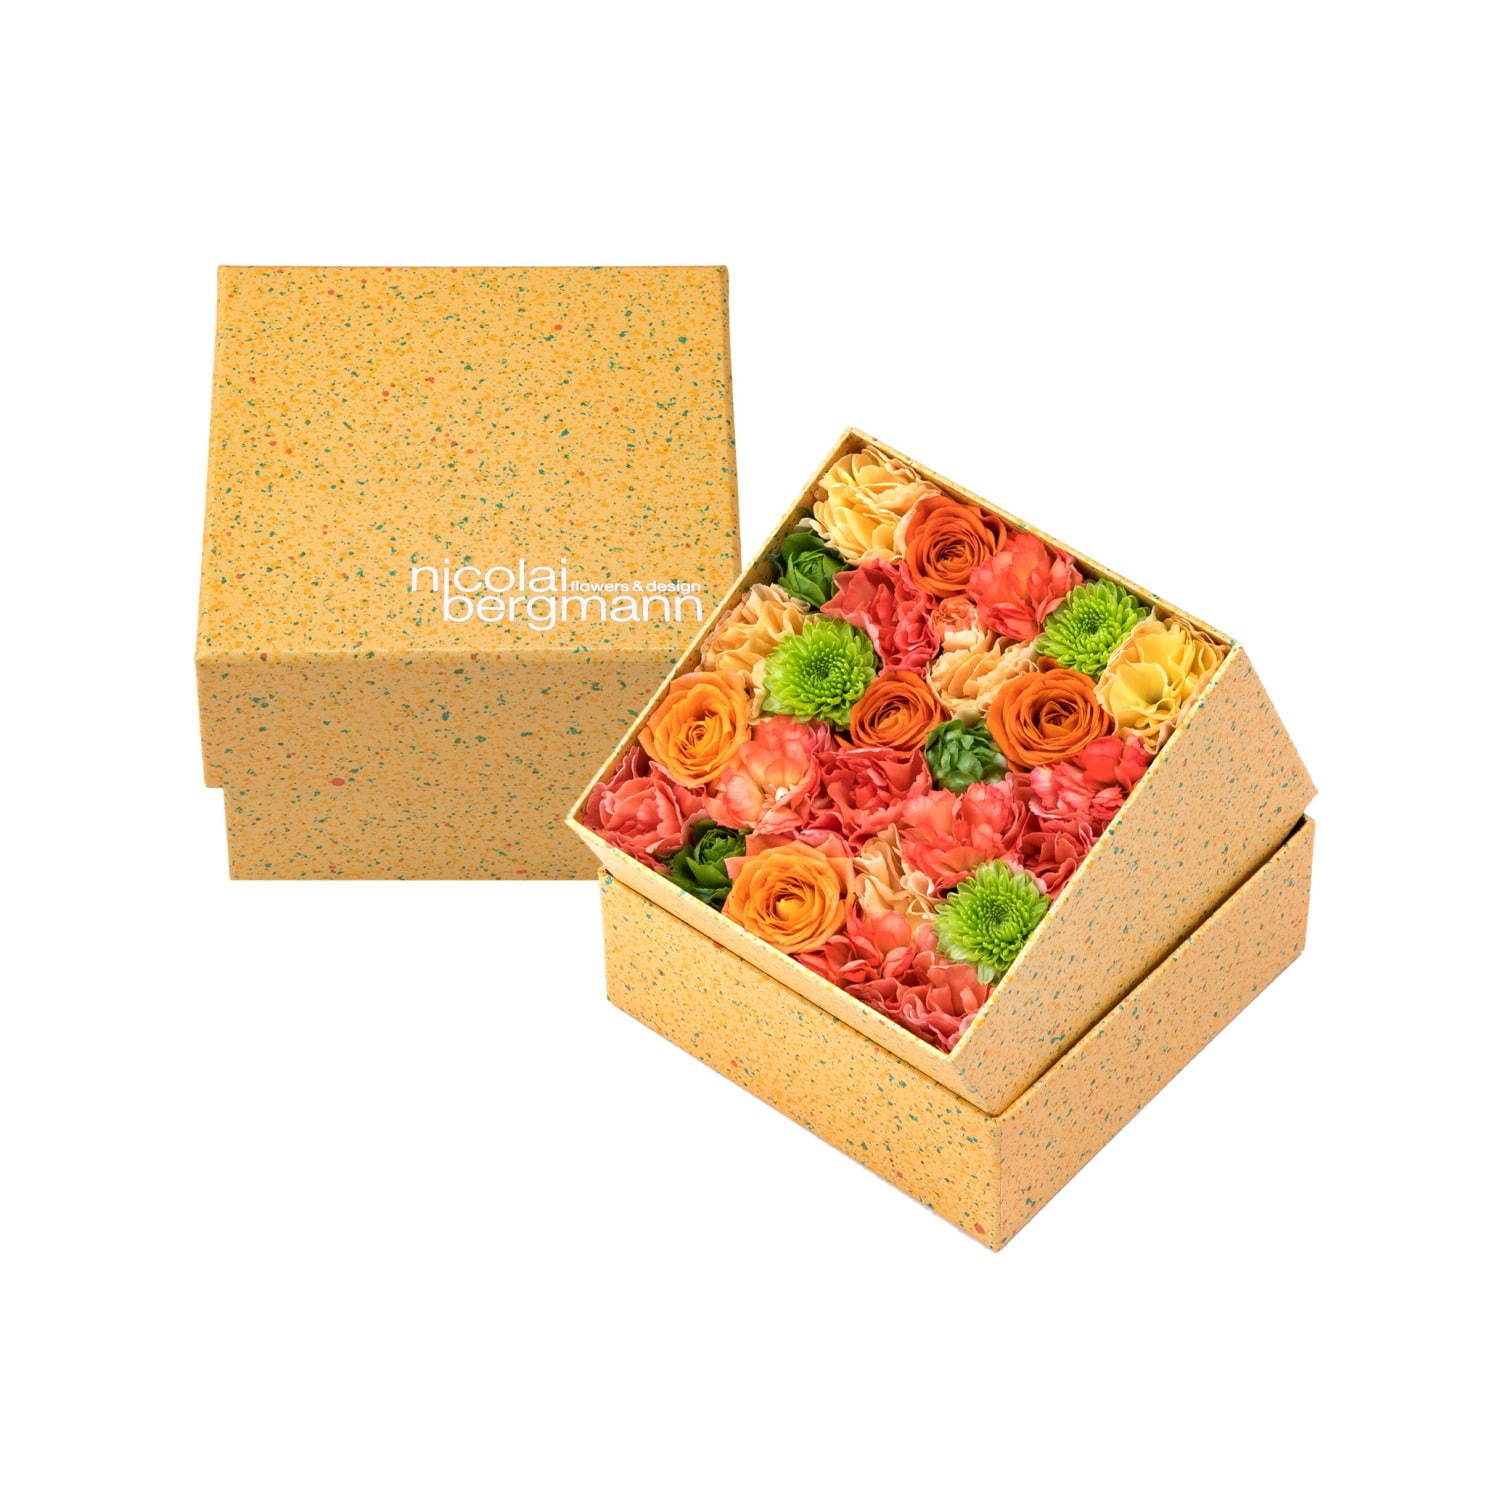 ニコライ バーグマン夏限定フラワーボックス オレンジ グリーンの花々をドット柄ボックスに詰めて ファッションプレス